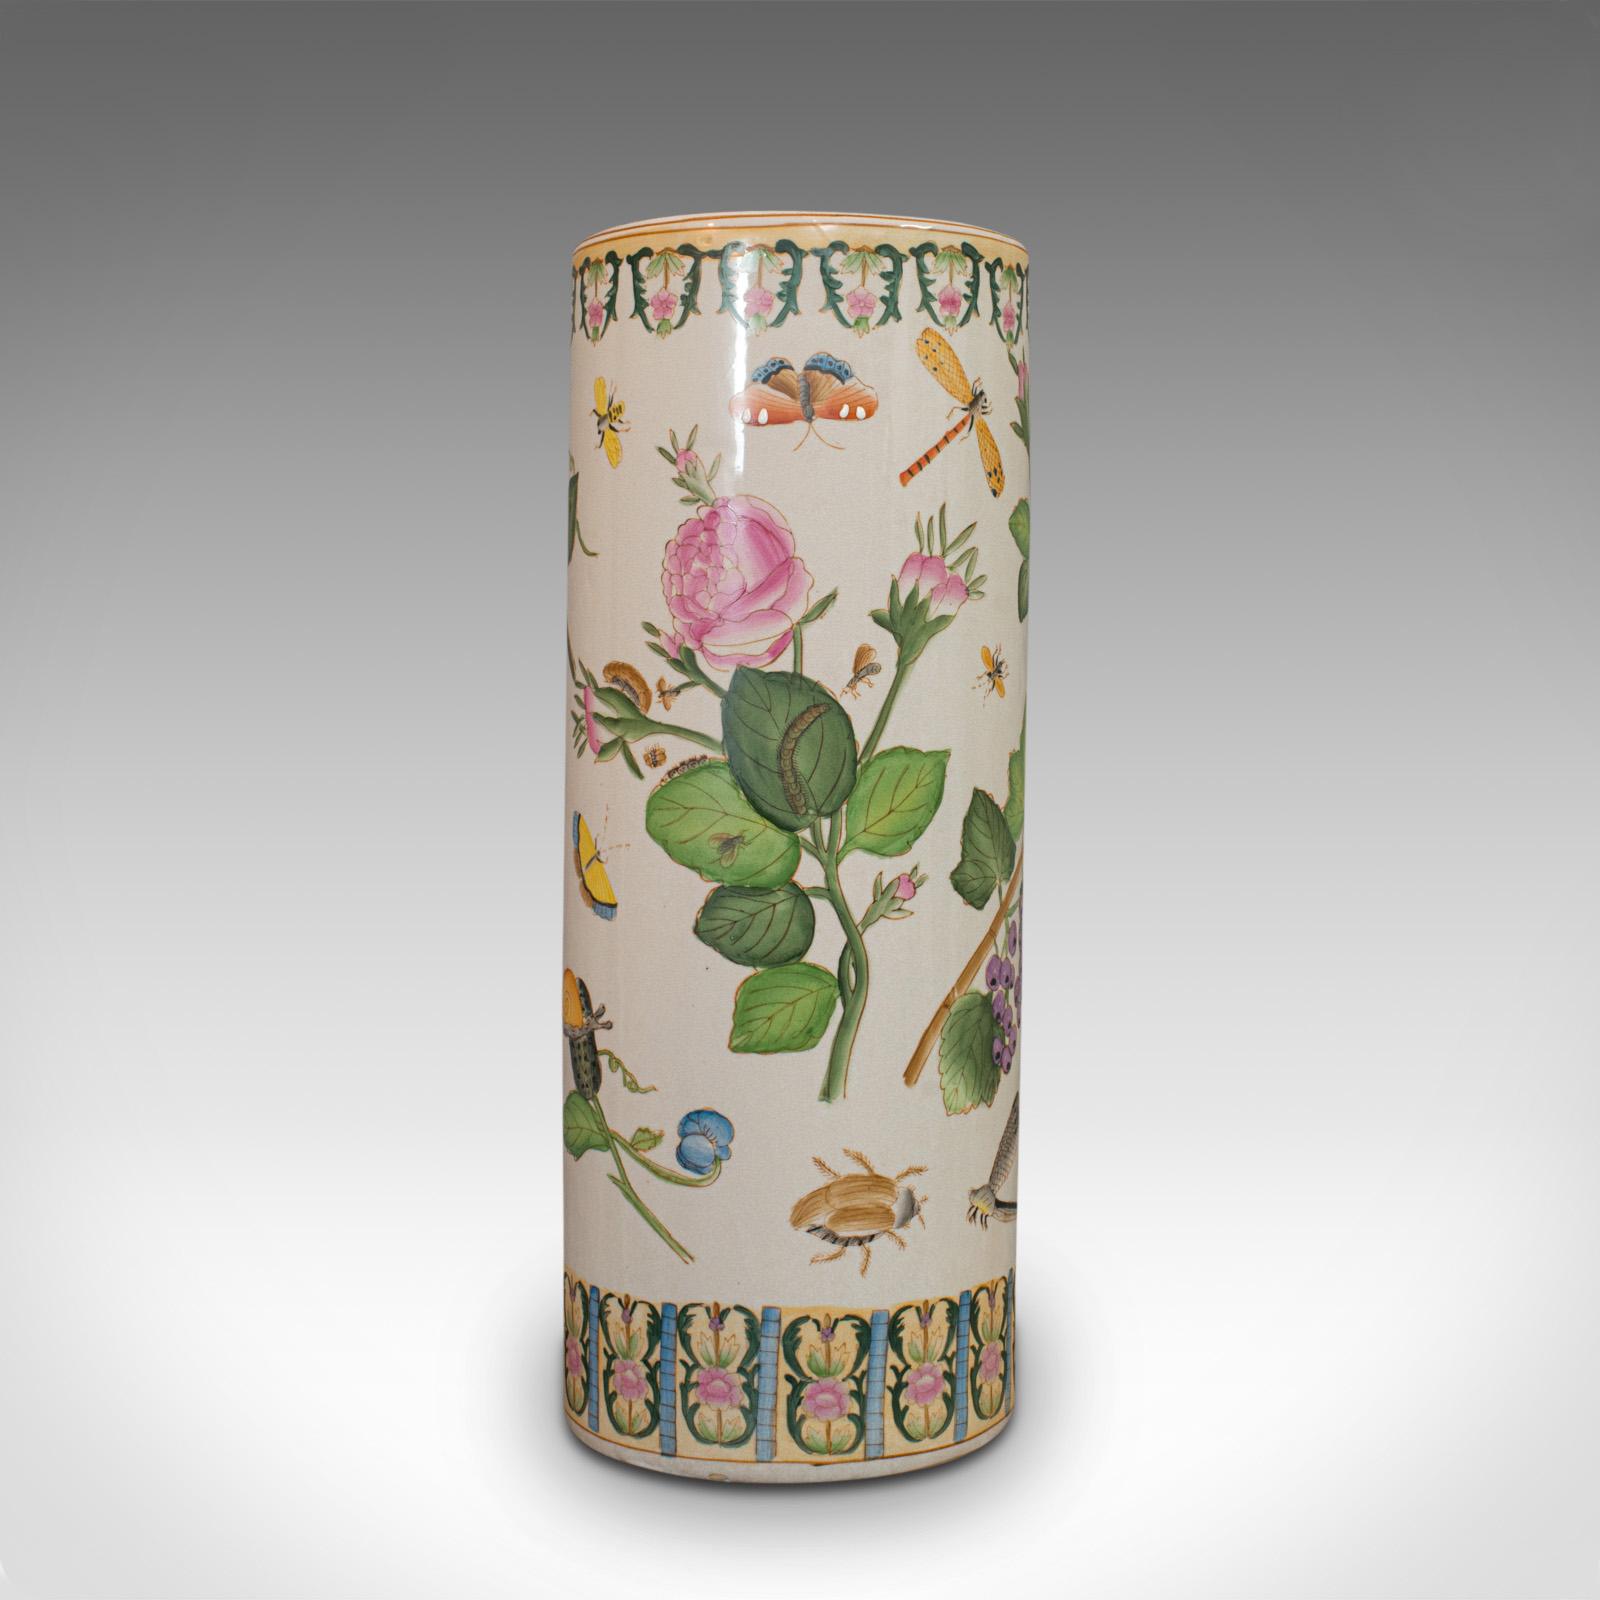 Il s'agit d'un grand support de bâton vintage. Un vase décoratif oriental en céramique, datant de la période Art Déco, vers 1940.

Plus grand que la moyenne, avec un décor attrayant et coloré
Affiche une patine vieillie souhaitable
Céramique en